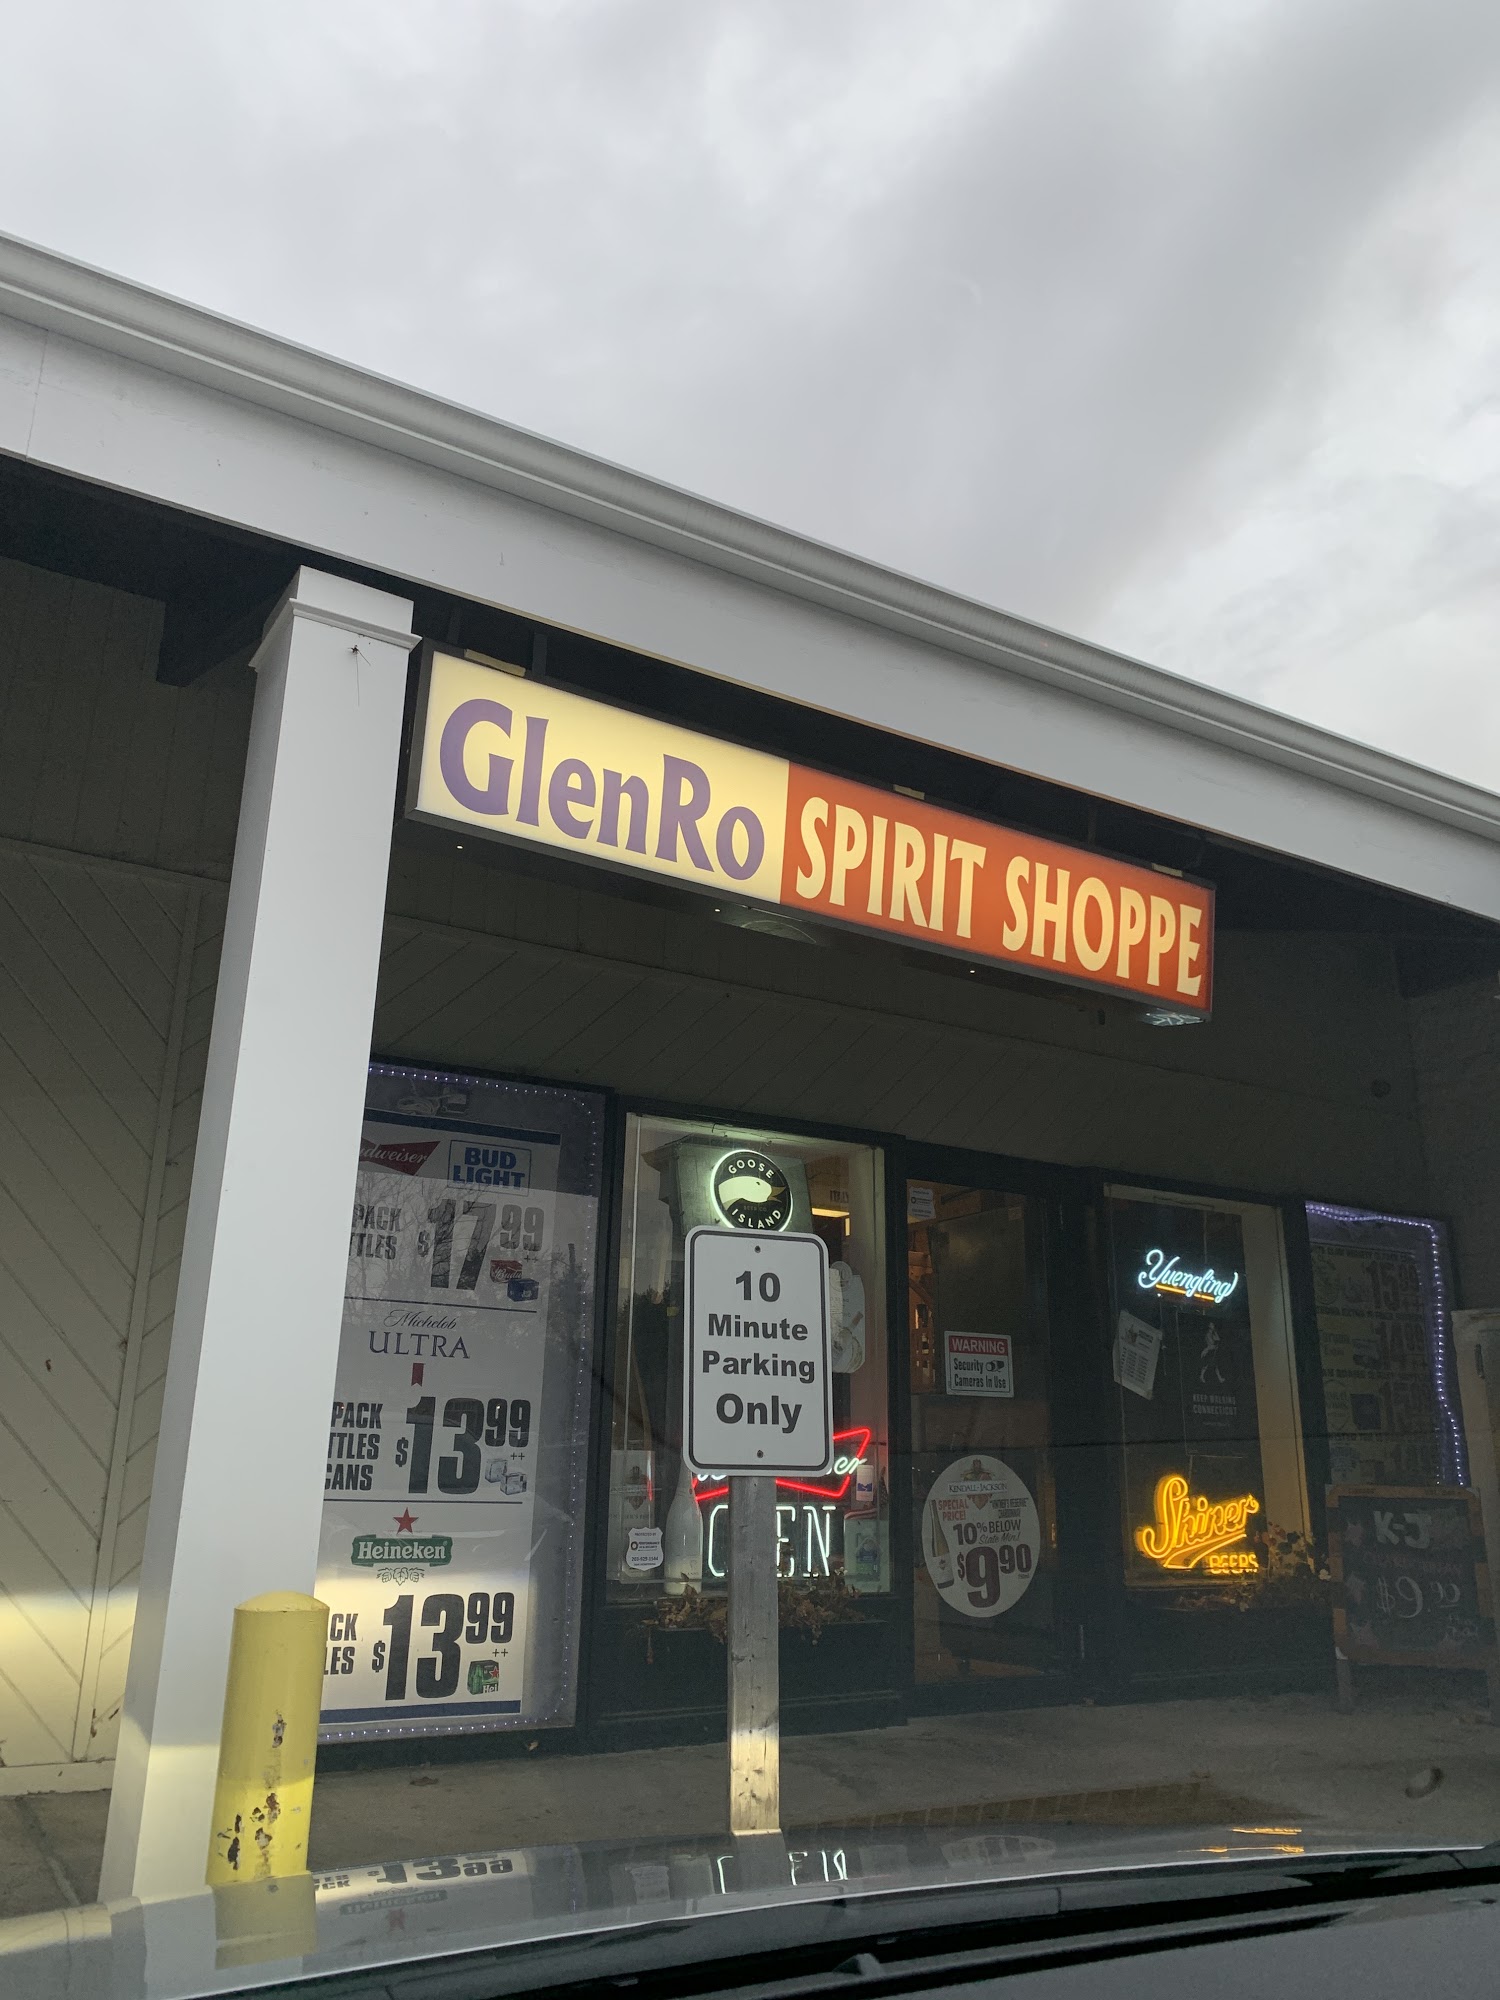 GlenRo Spirit Shoppe